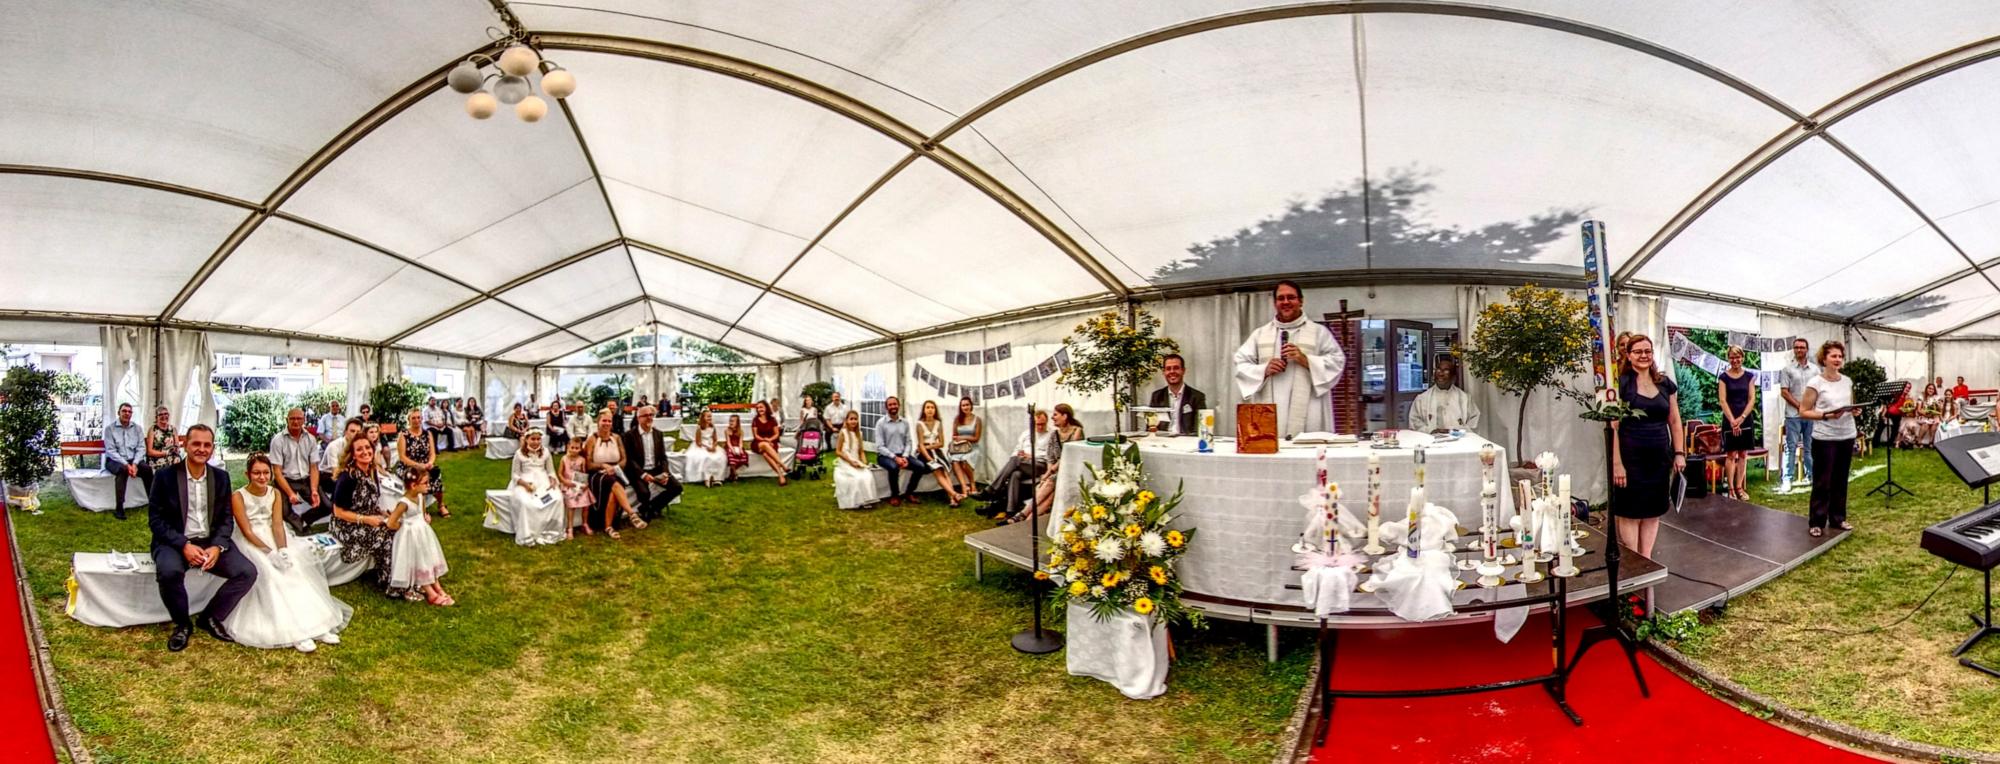 Erstkommunionfest im Zelt